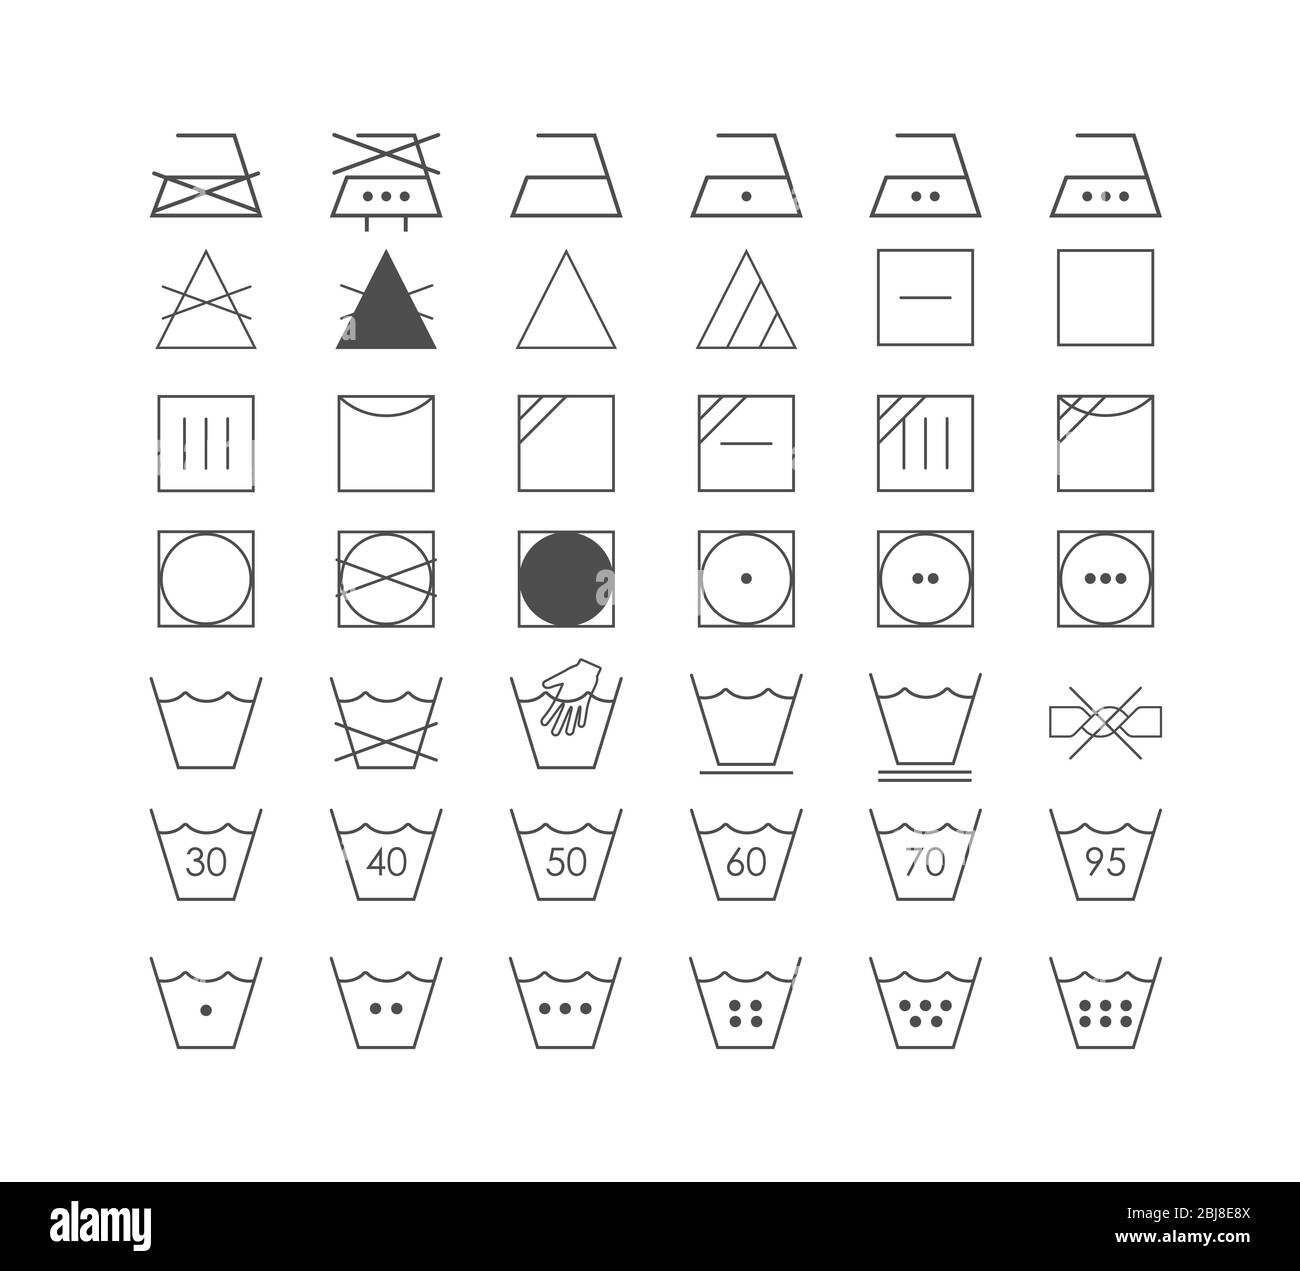 Symbole für die Wäsche. Vektorgrafik, flaches Design. Stock Vektor